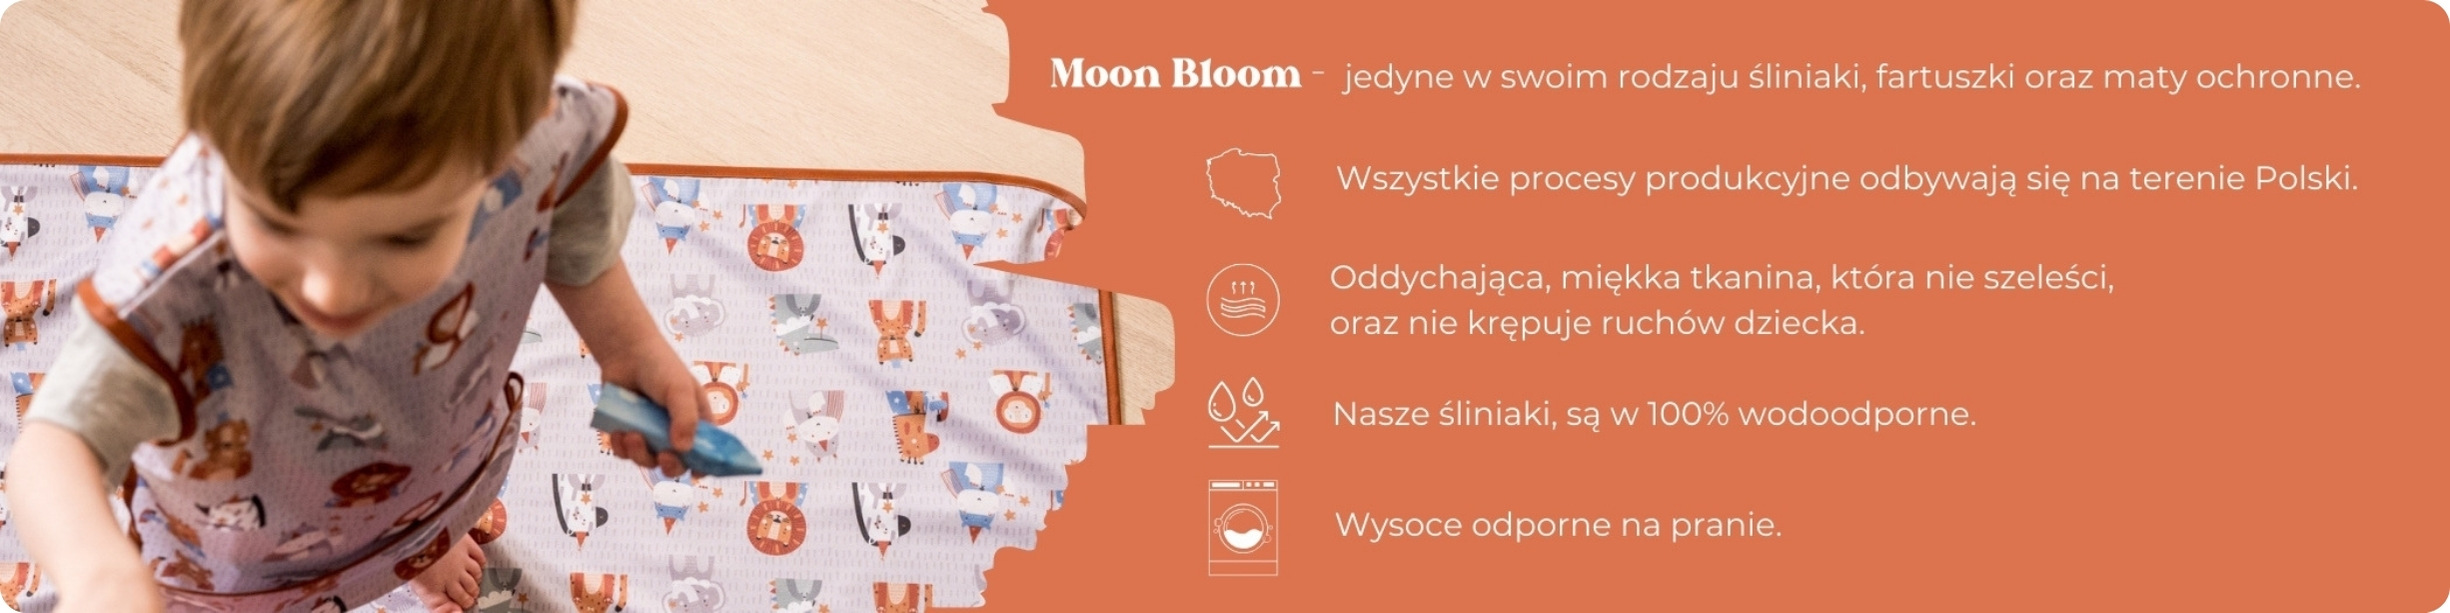 Co wyróżnia Produkty Moon Bloom